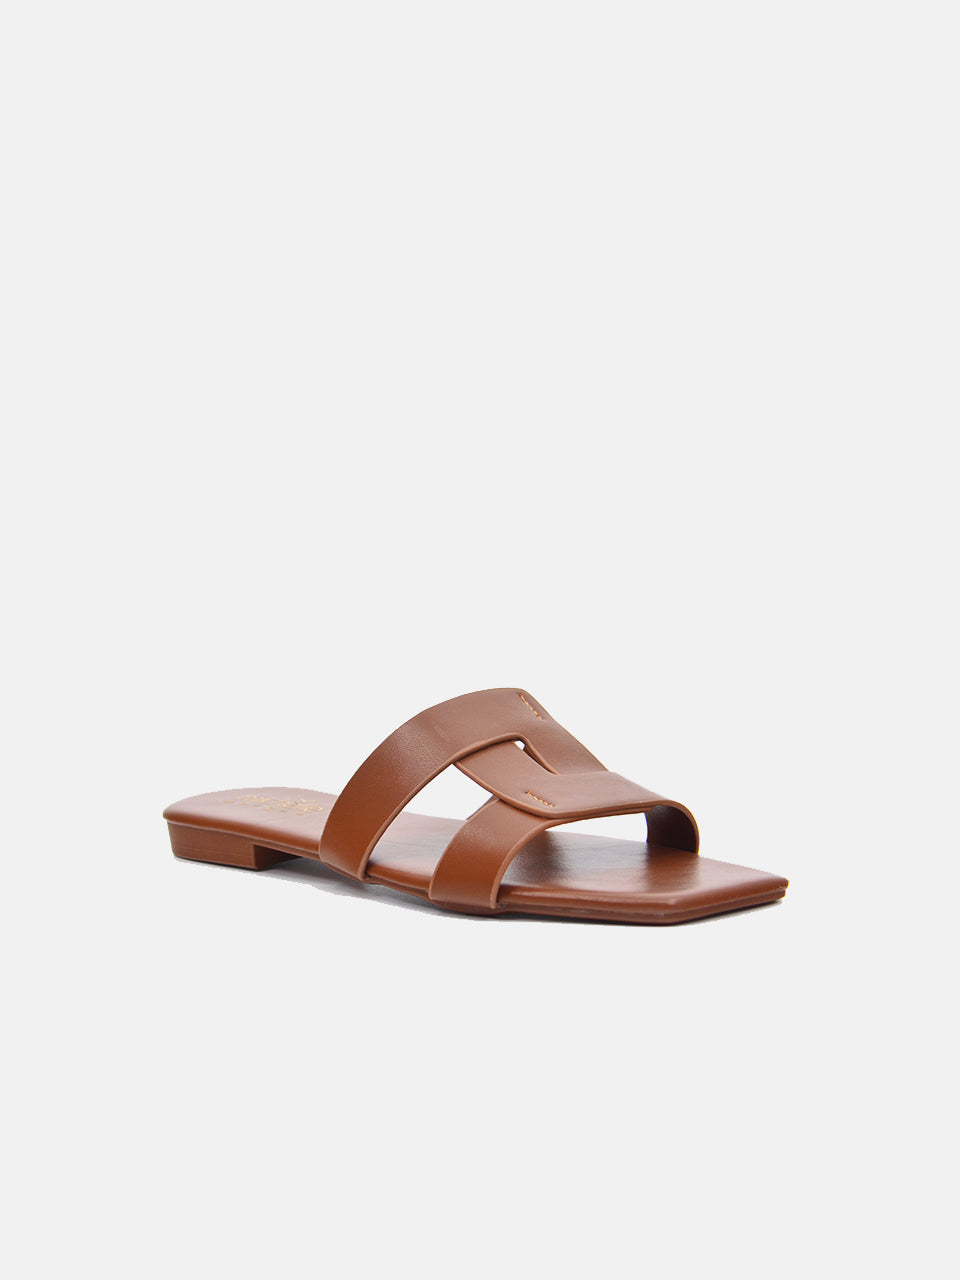 Michelle Morgan 114RJ808 Women's Flat Sandals #color_Brown